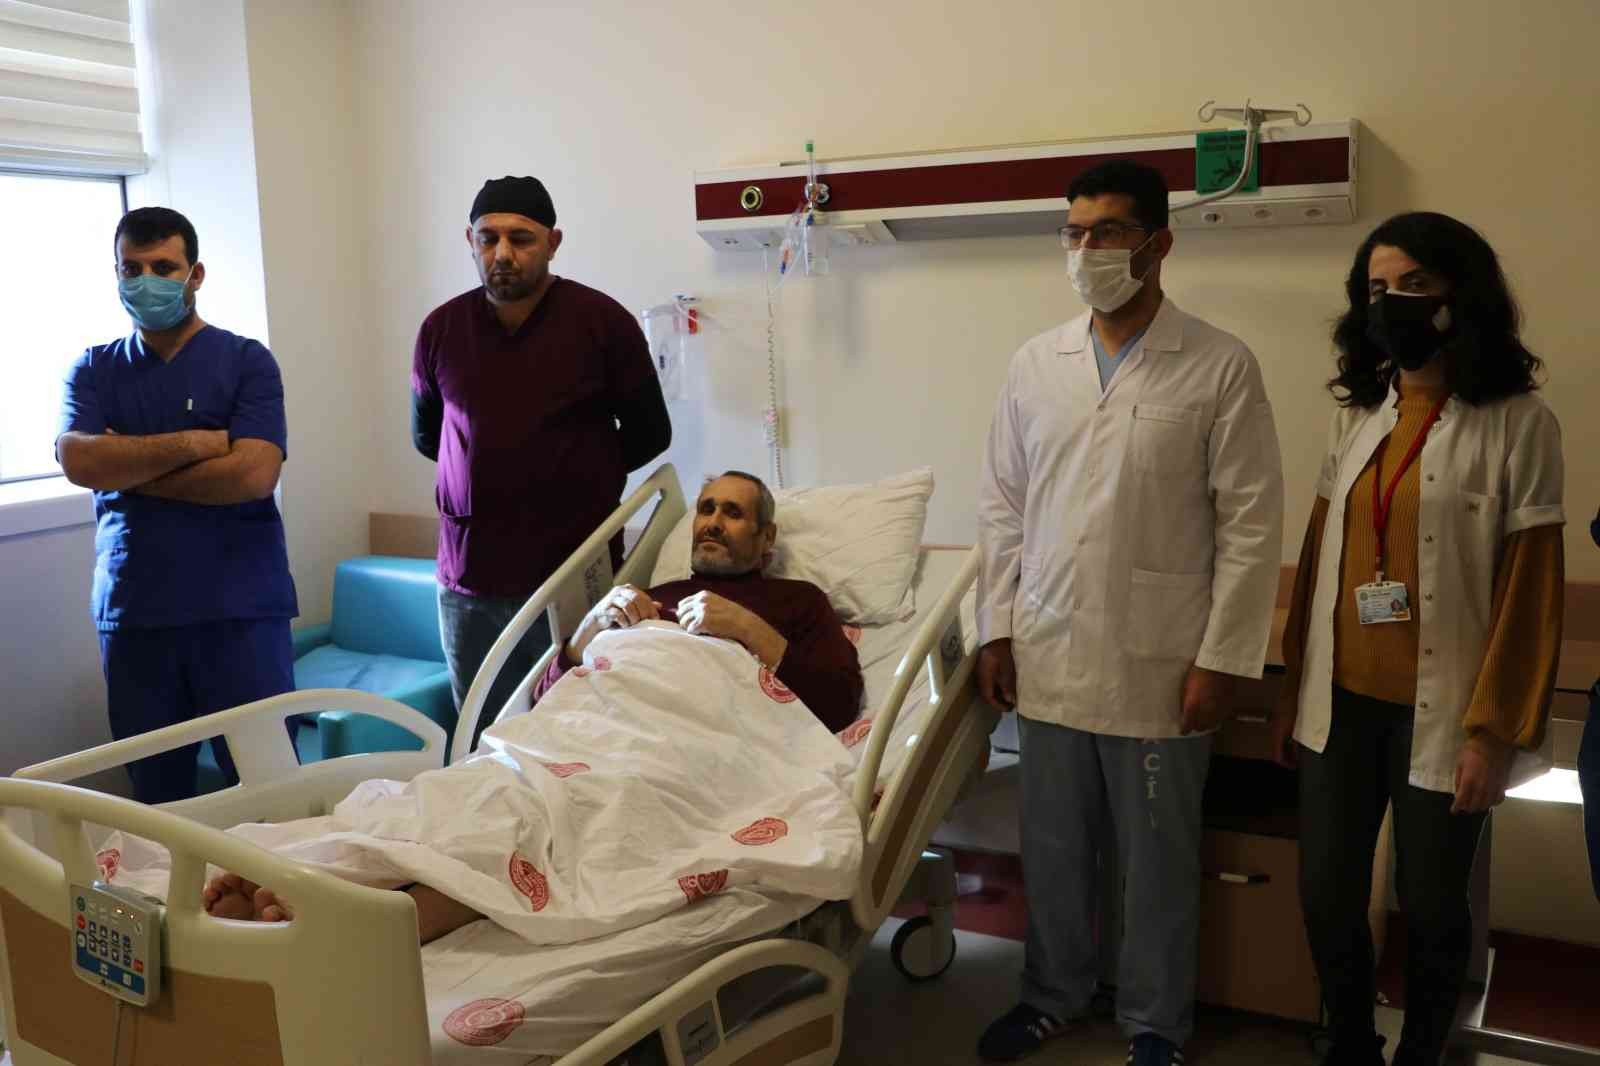 Şanlıurfa’da felçli hasta yapılan operasyonla sağlığına kavuştu #sanliurfa